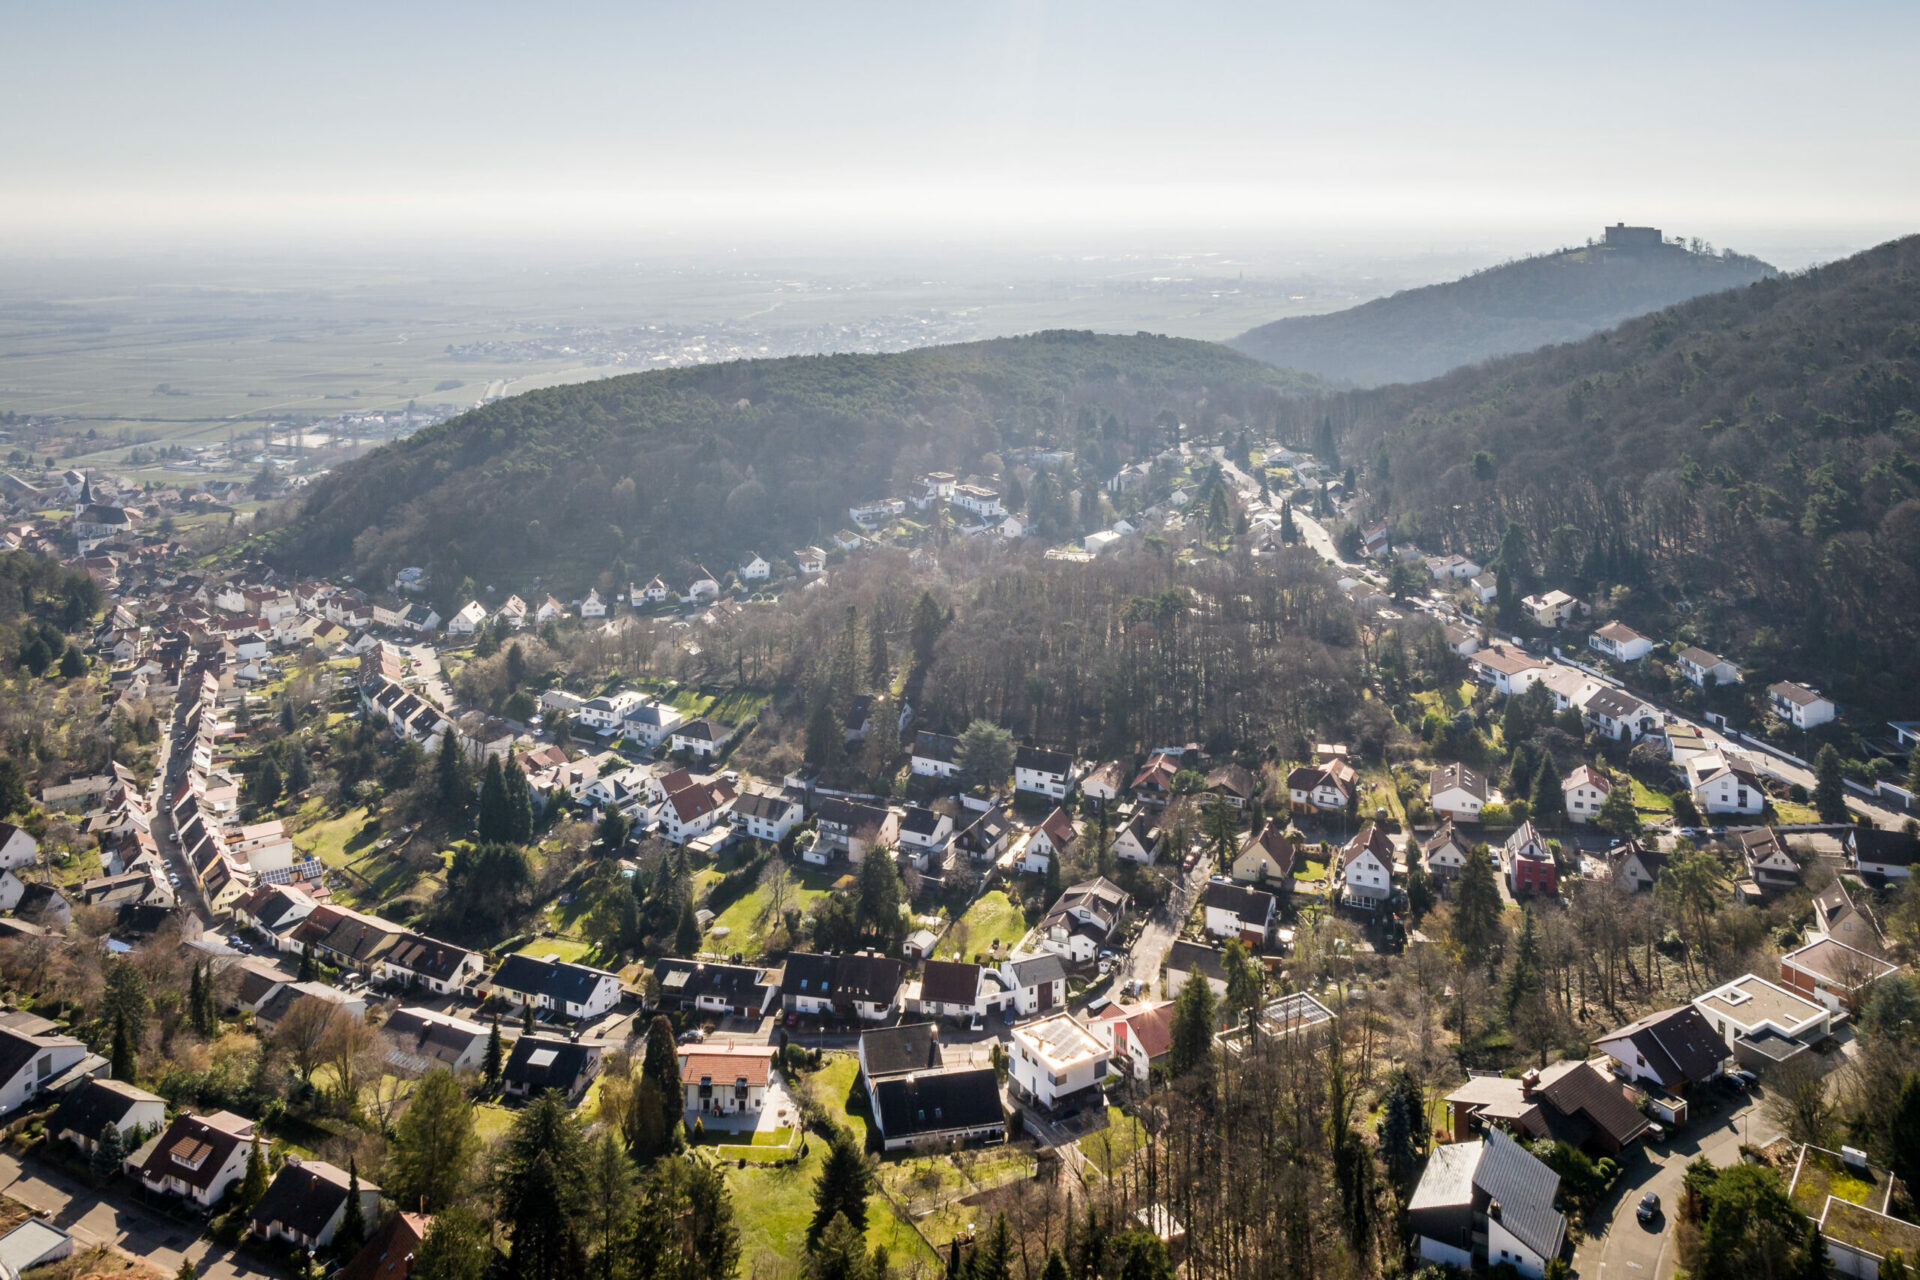 Luftaufnahme einer kleinen Stadt in einem Tal mit dem Hambacher Schloss auf einem nahe gelegenen Hügel, umgeben von üppigem Grün und klarem Himmel.